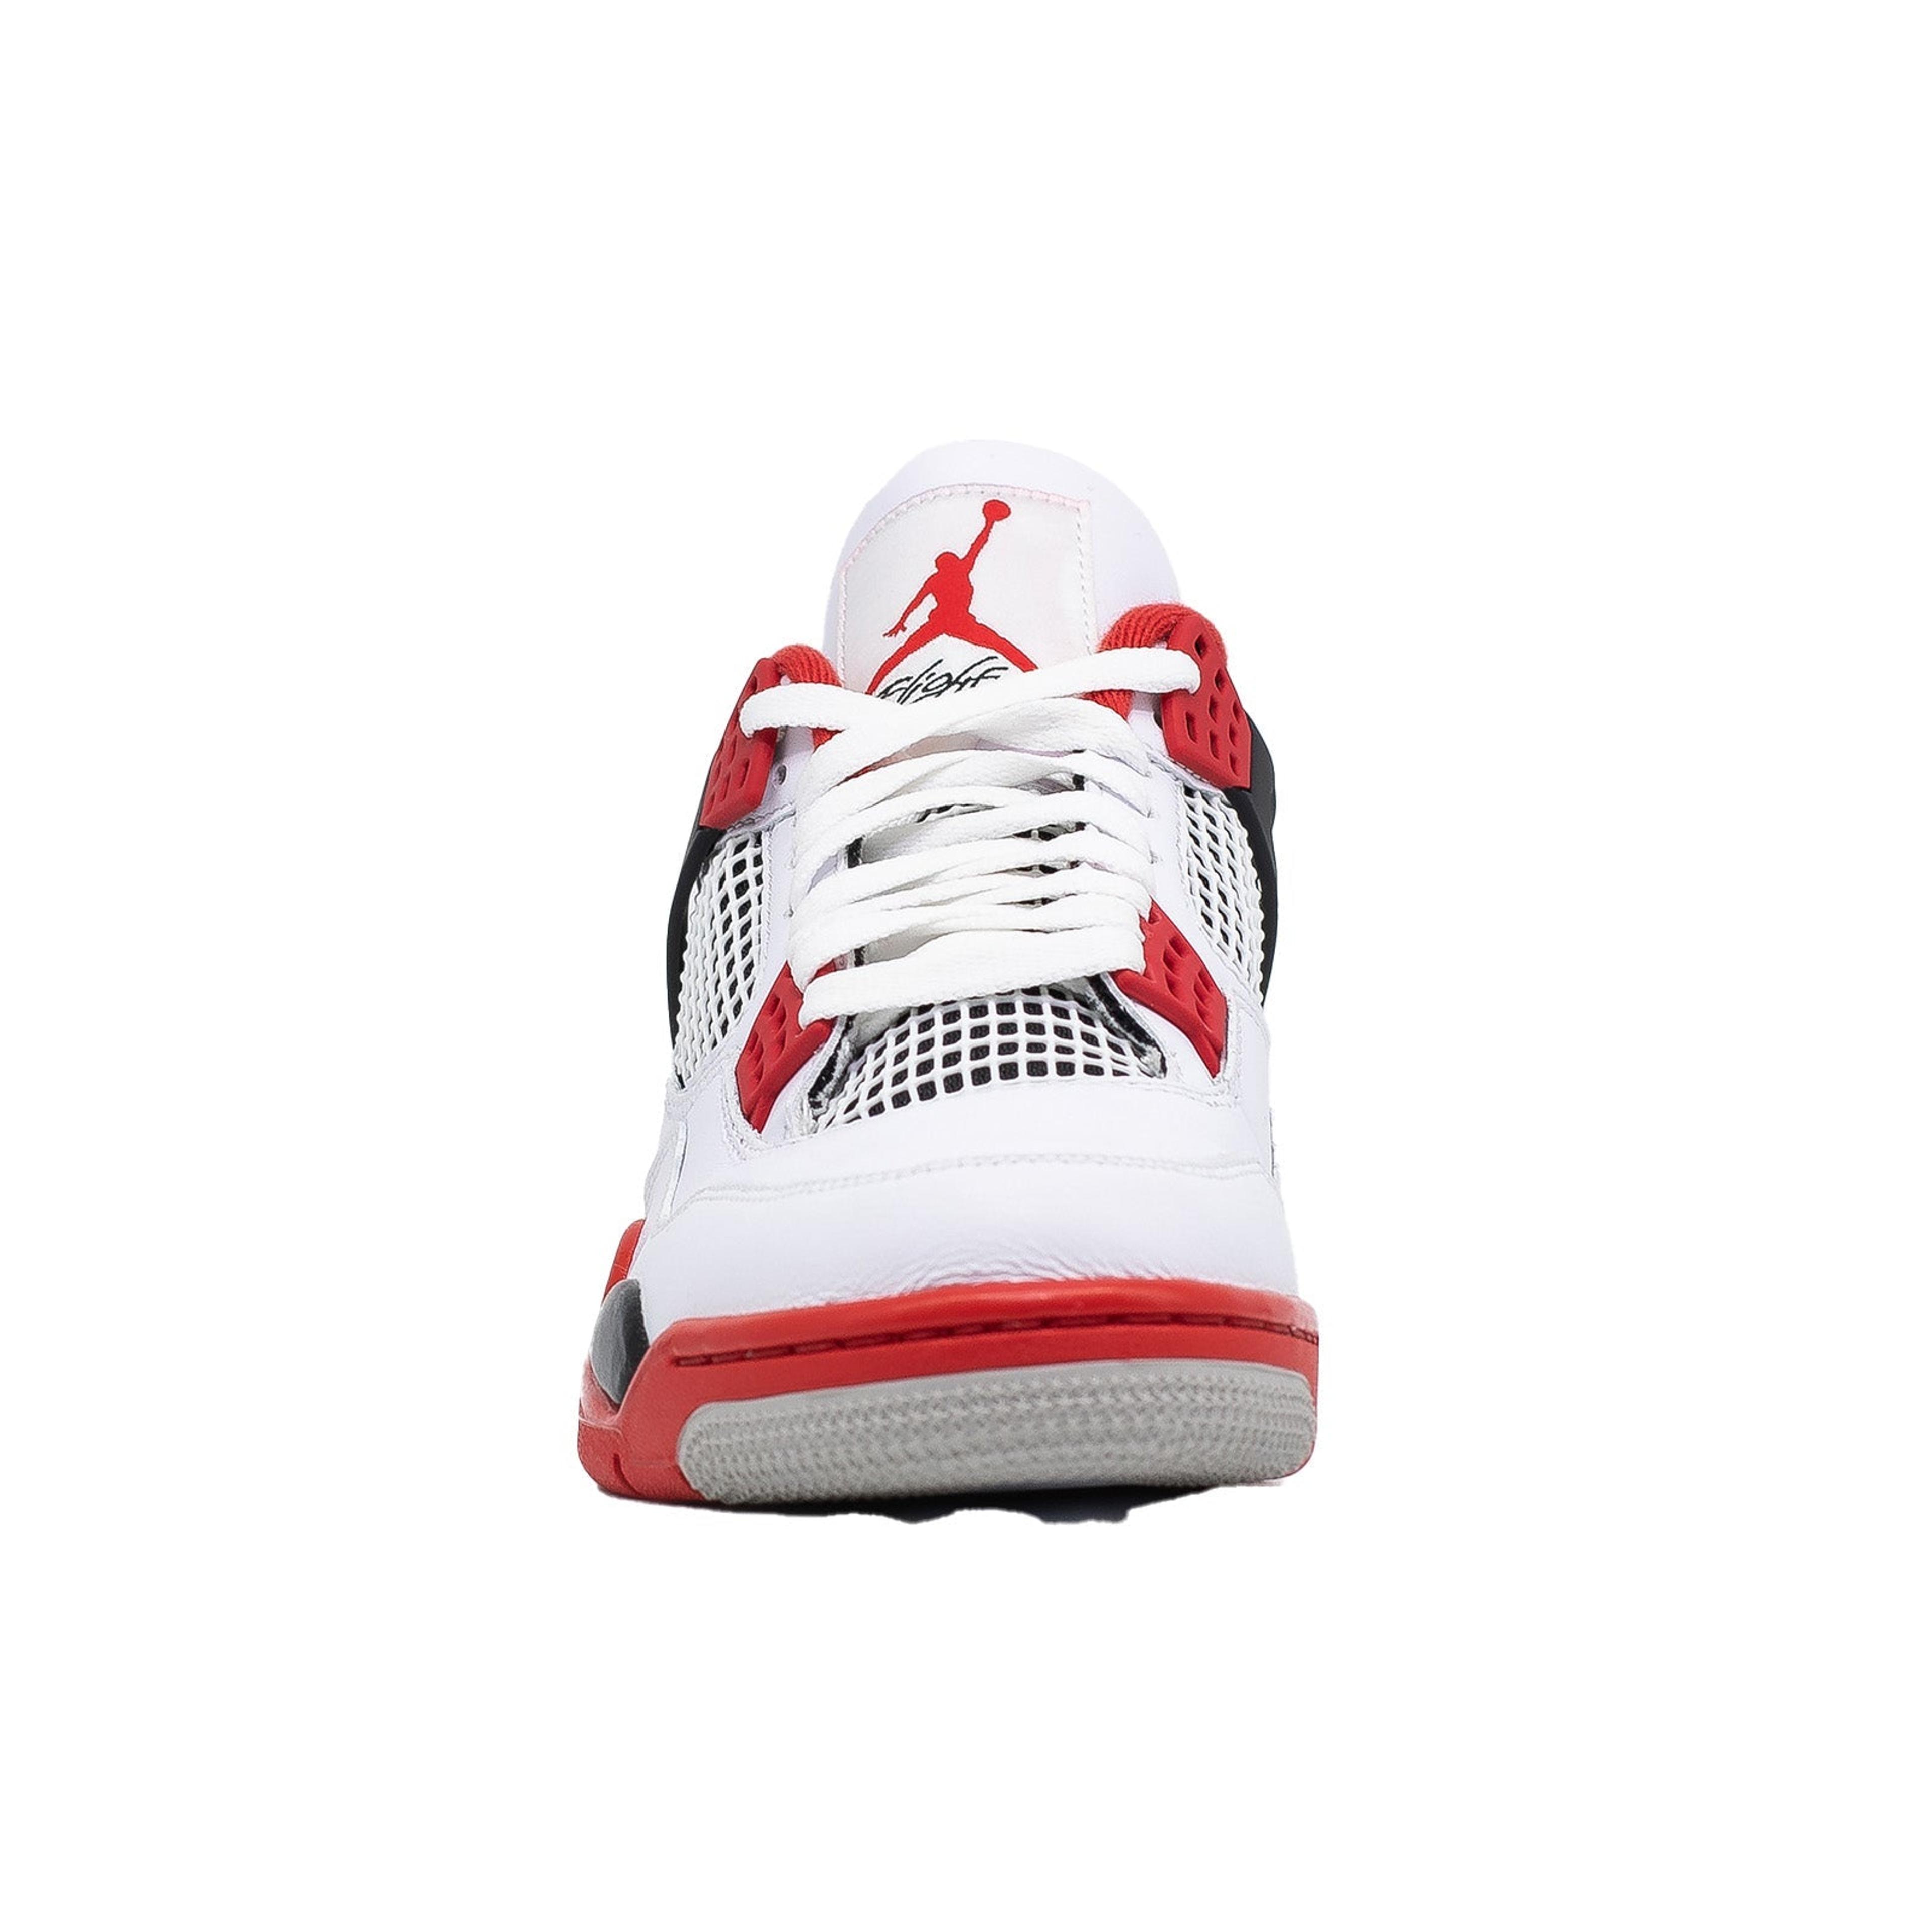 Alternate View 3 of Air Jordan 4, Fire Red (2020)